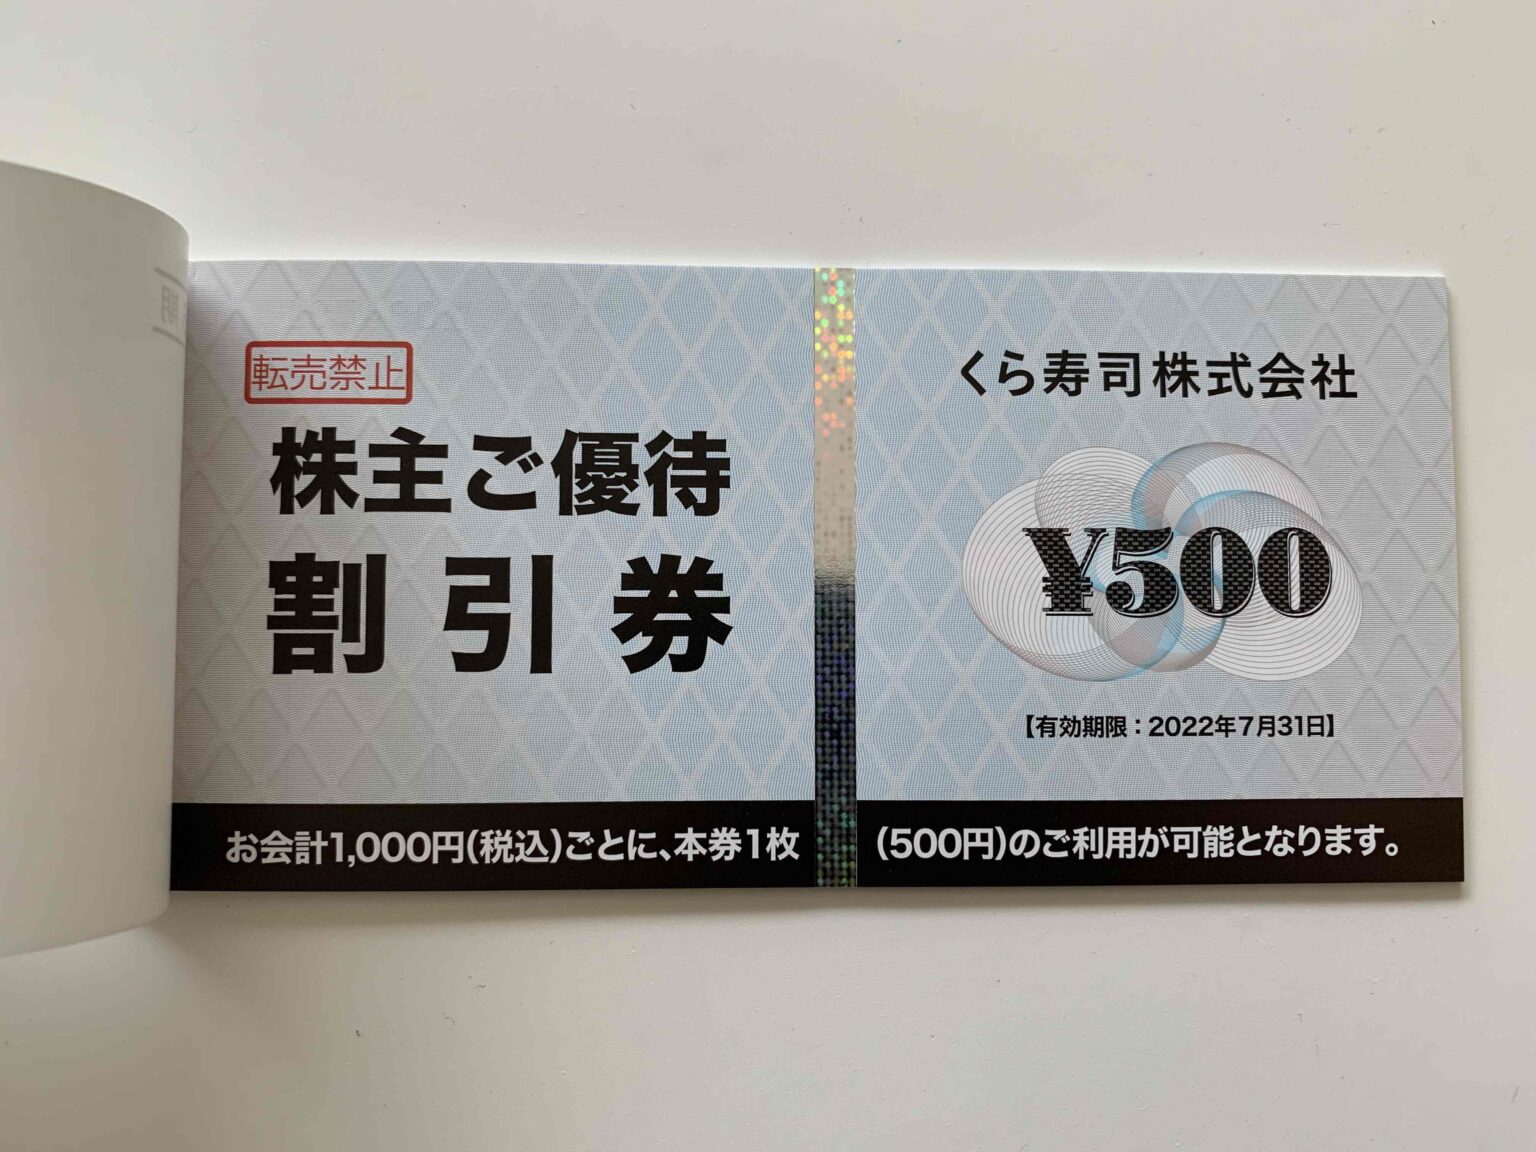 【購入本物】チムニー 株主優待券 15000円 2022年6月期限 レストラン/食事券